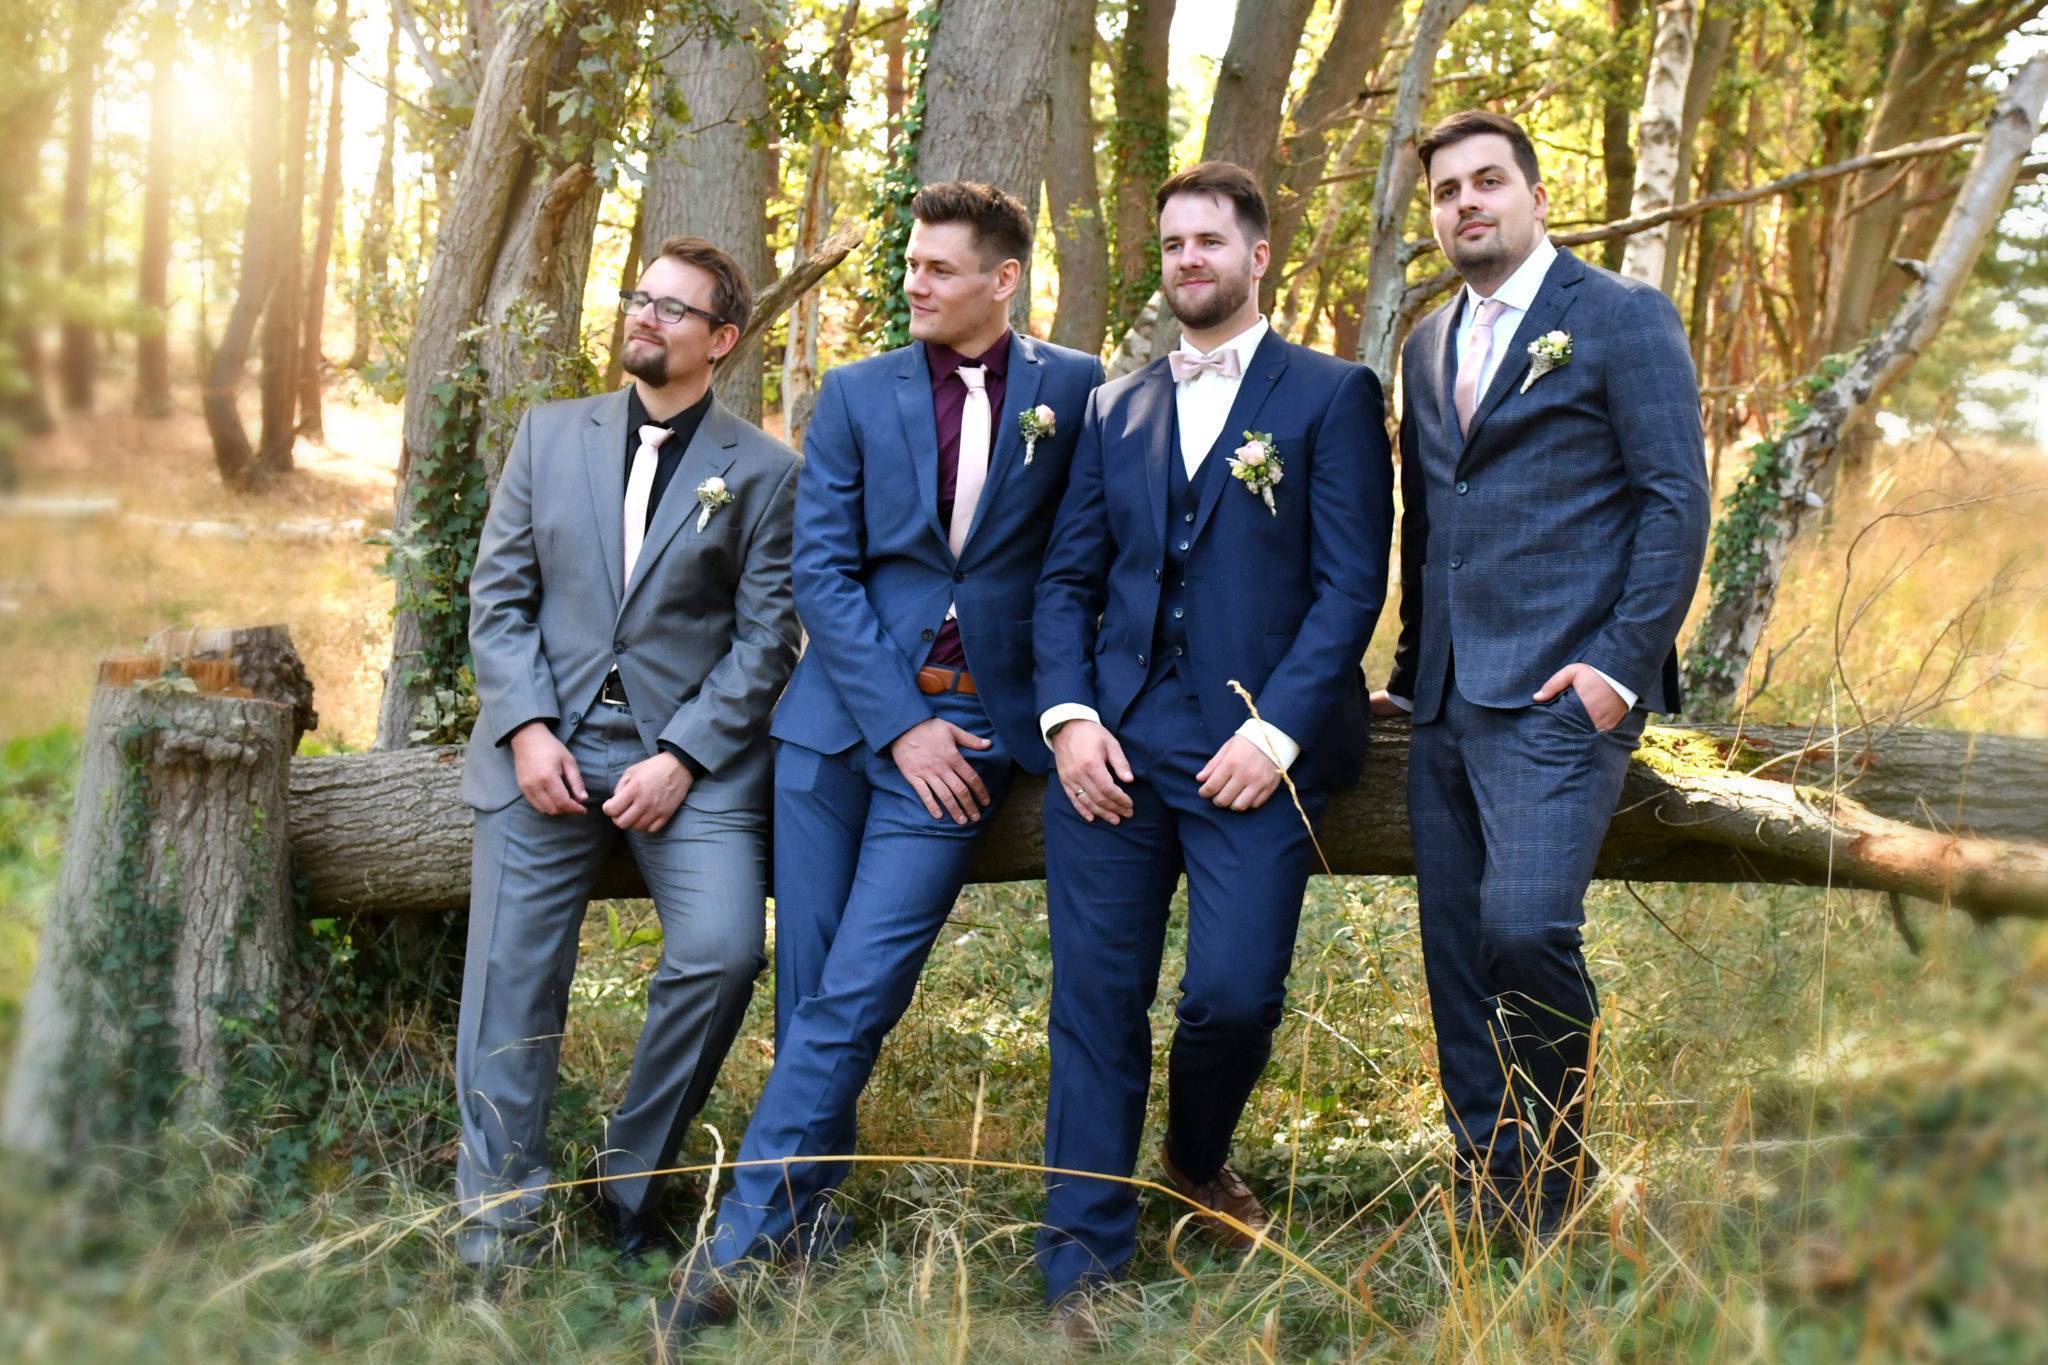 Fotoshooting Bräutigam mit Trauzeugen und Freunden im Wald